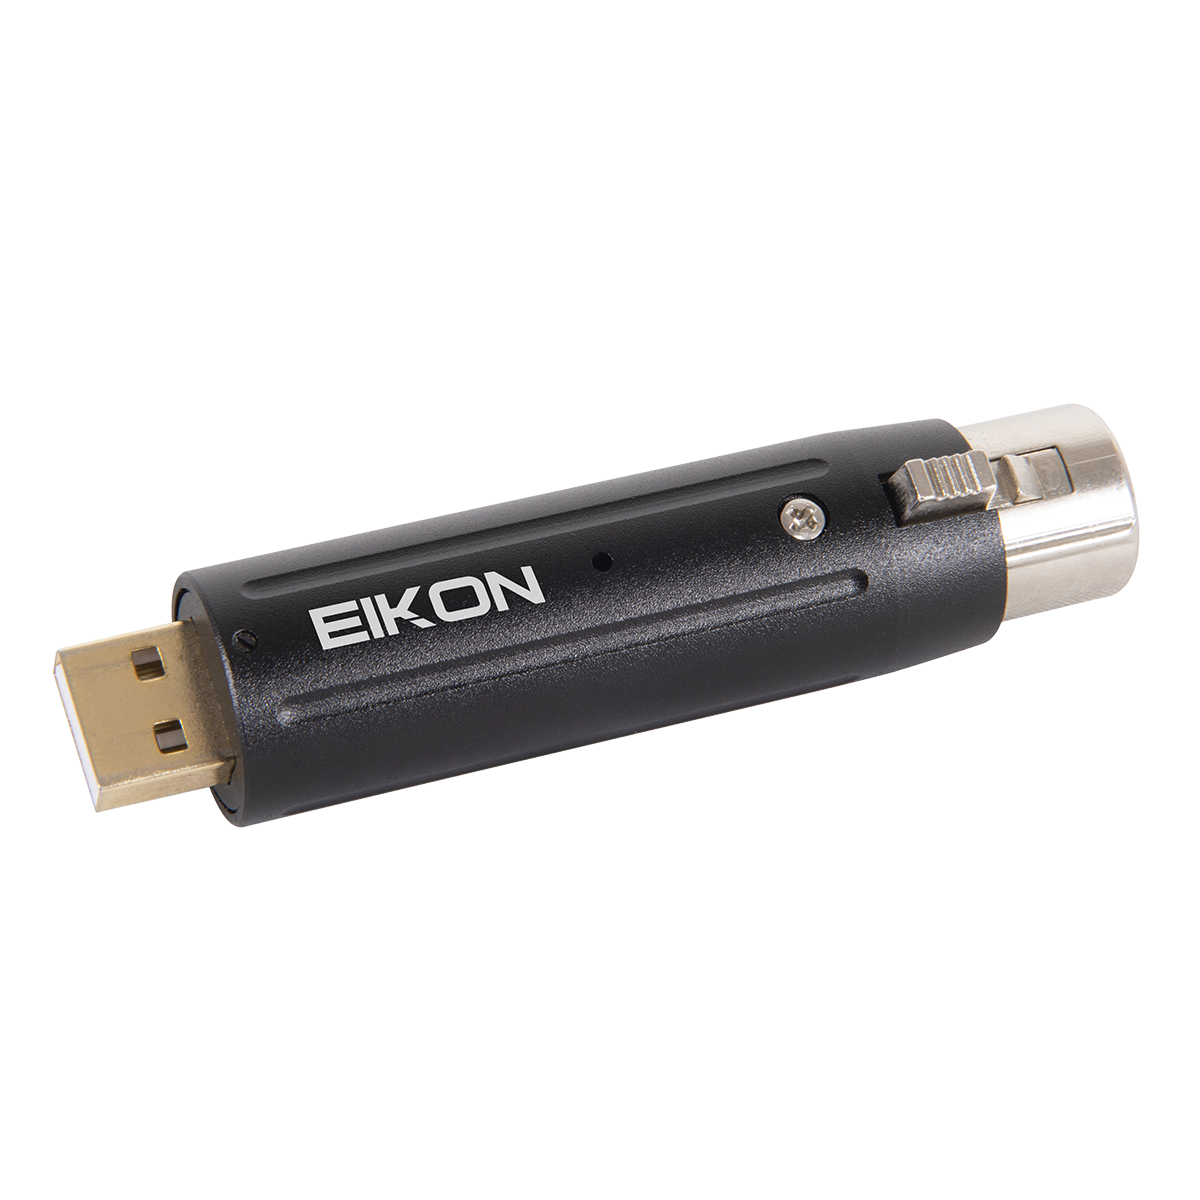 Eikon EKUSBX1 Universal USB to XLR Audio Interface